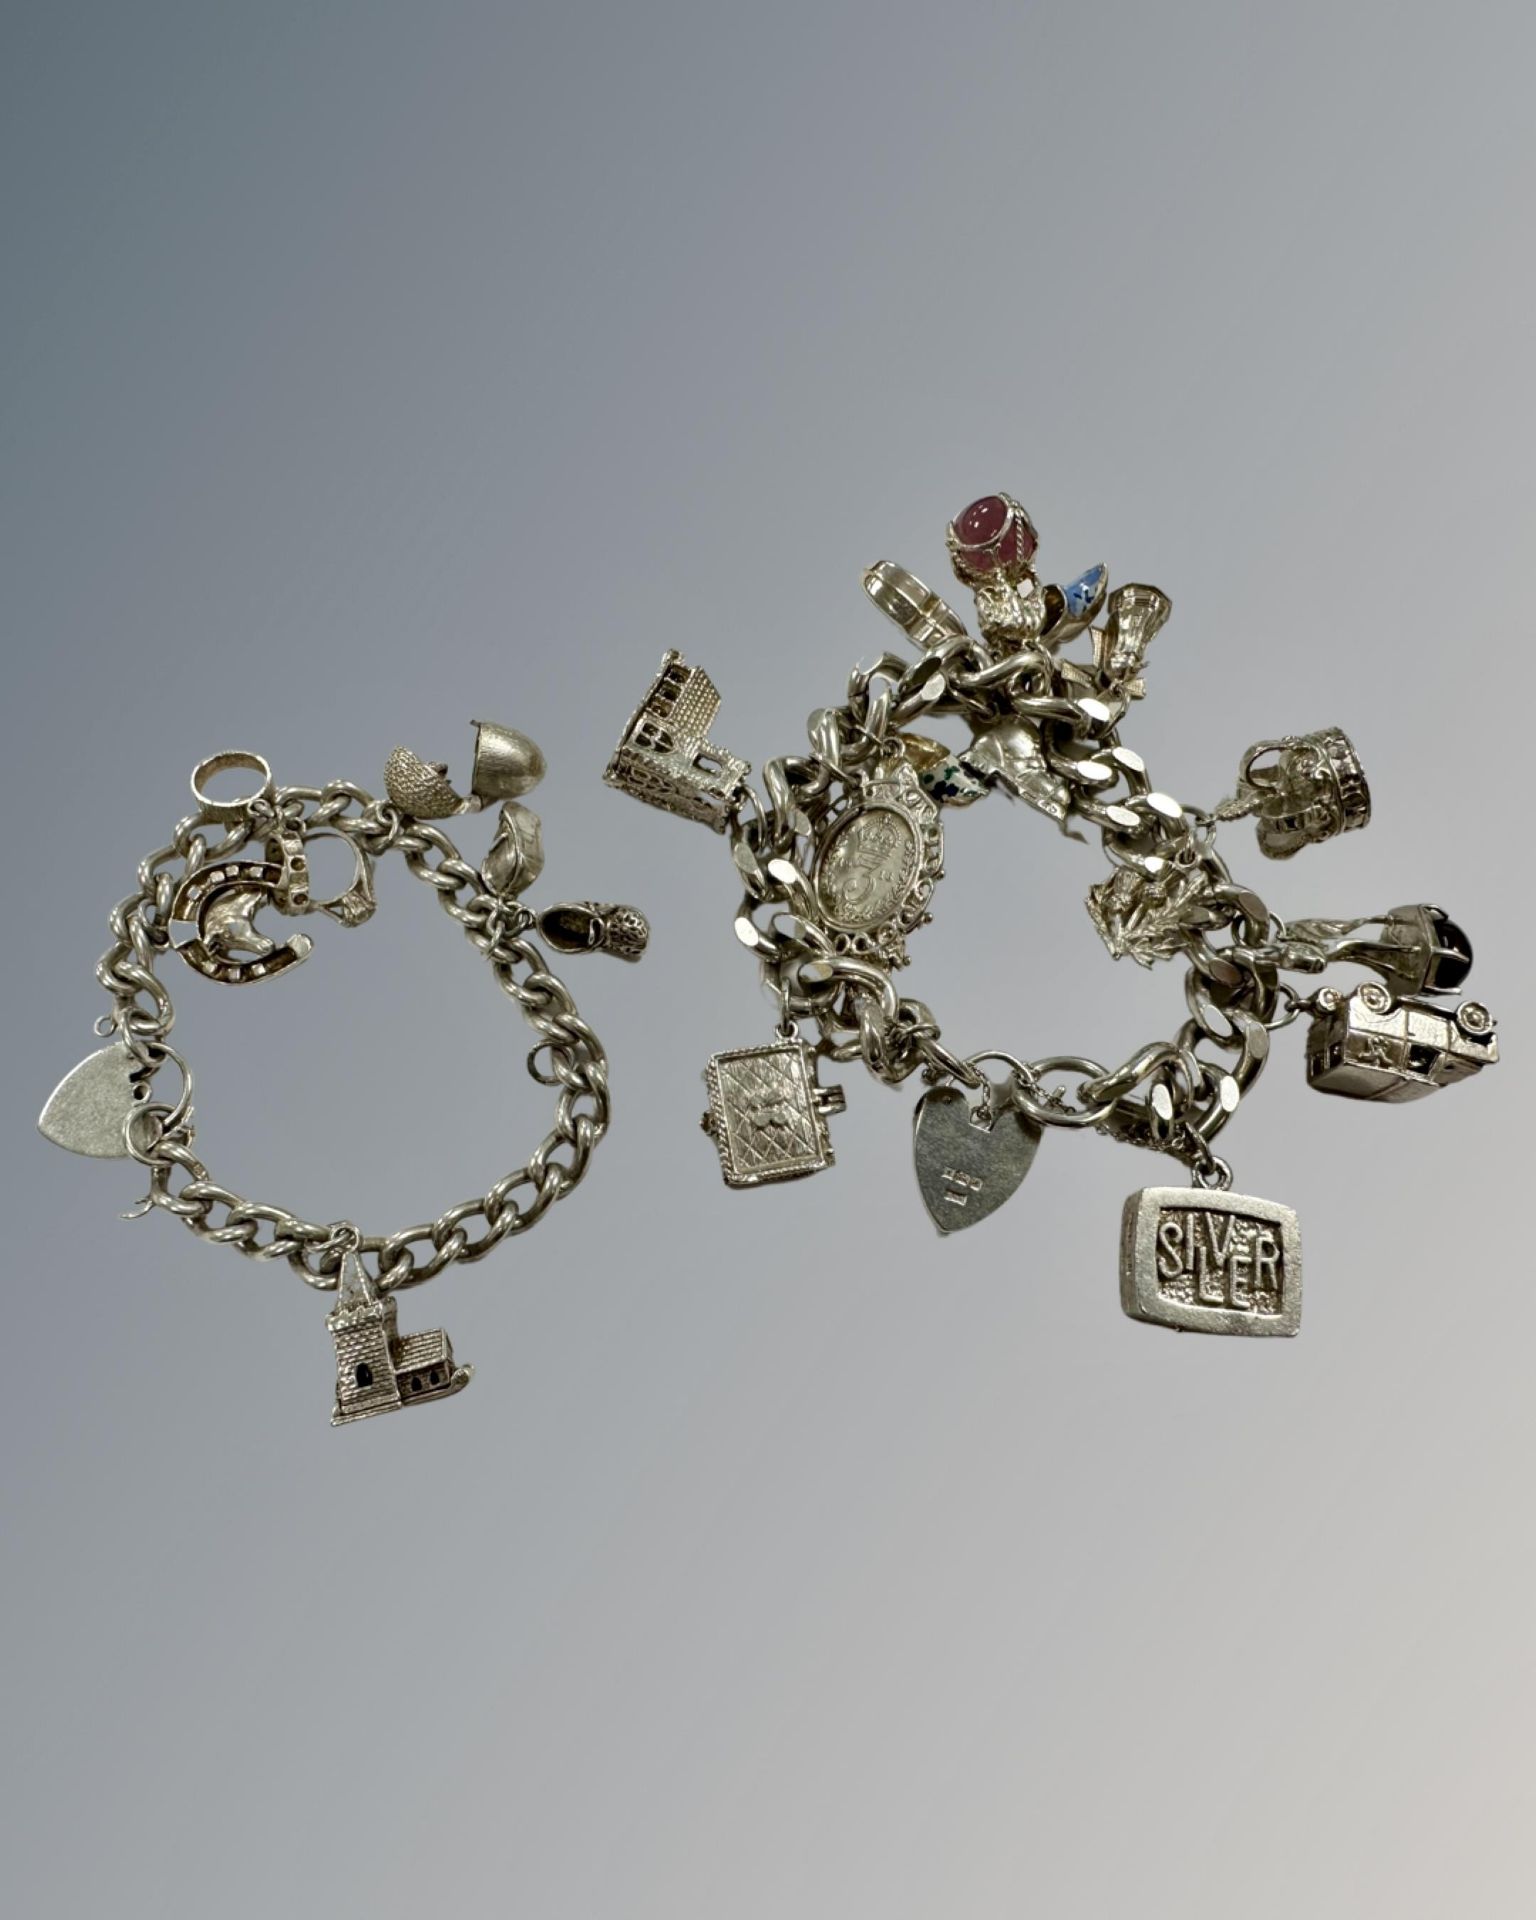 Two silver charm bracelets, 170g.